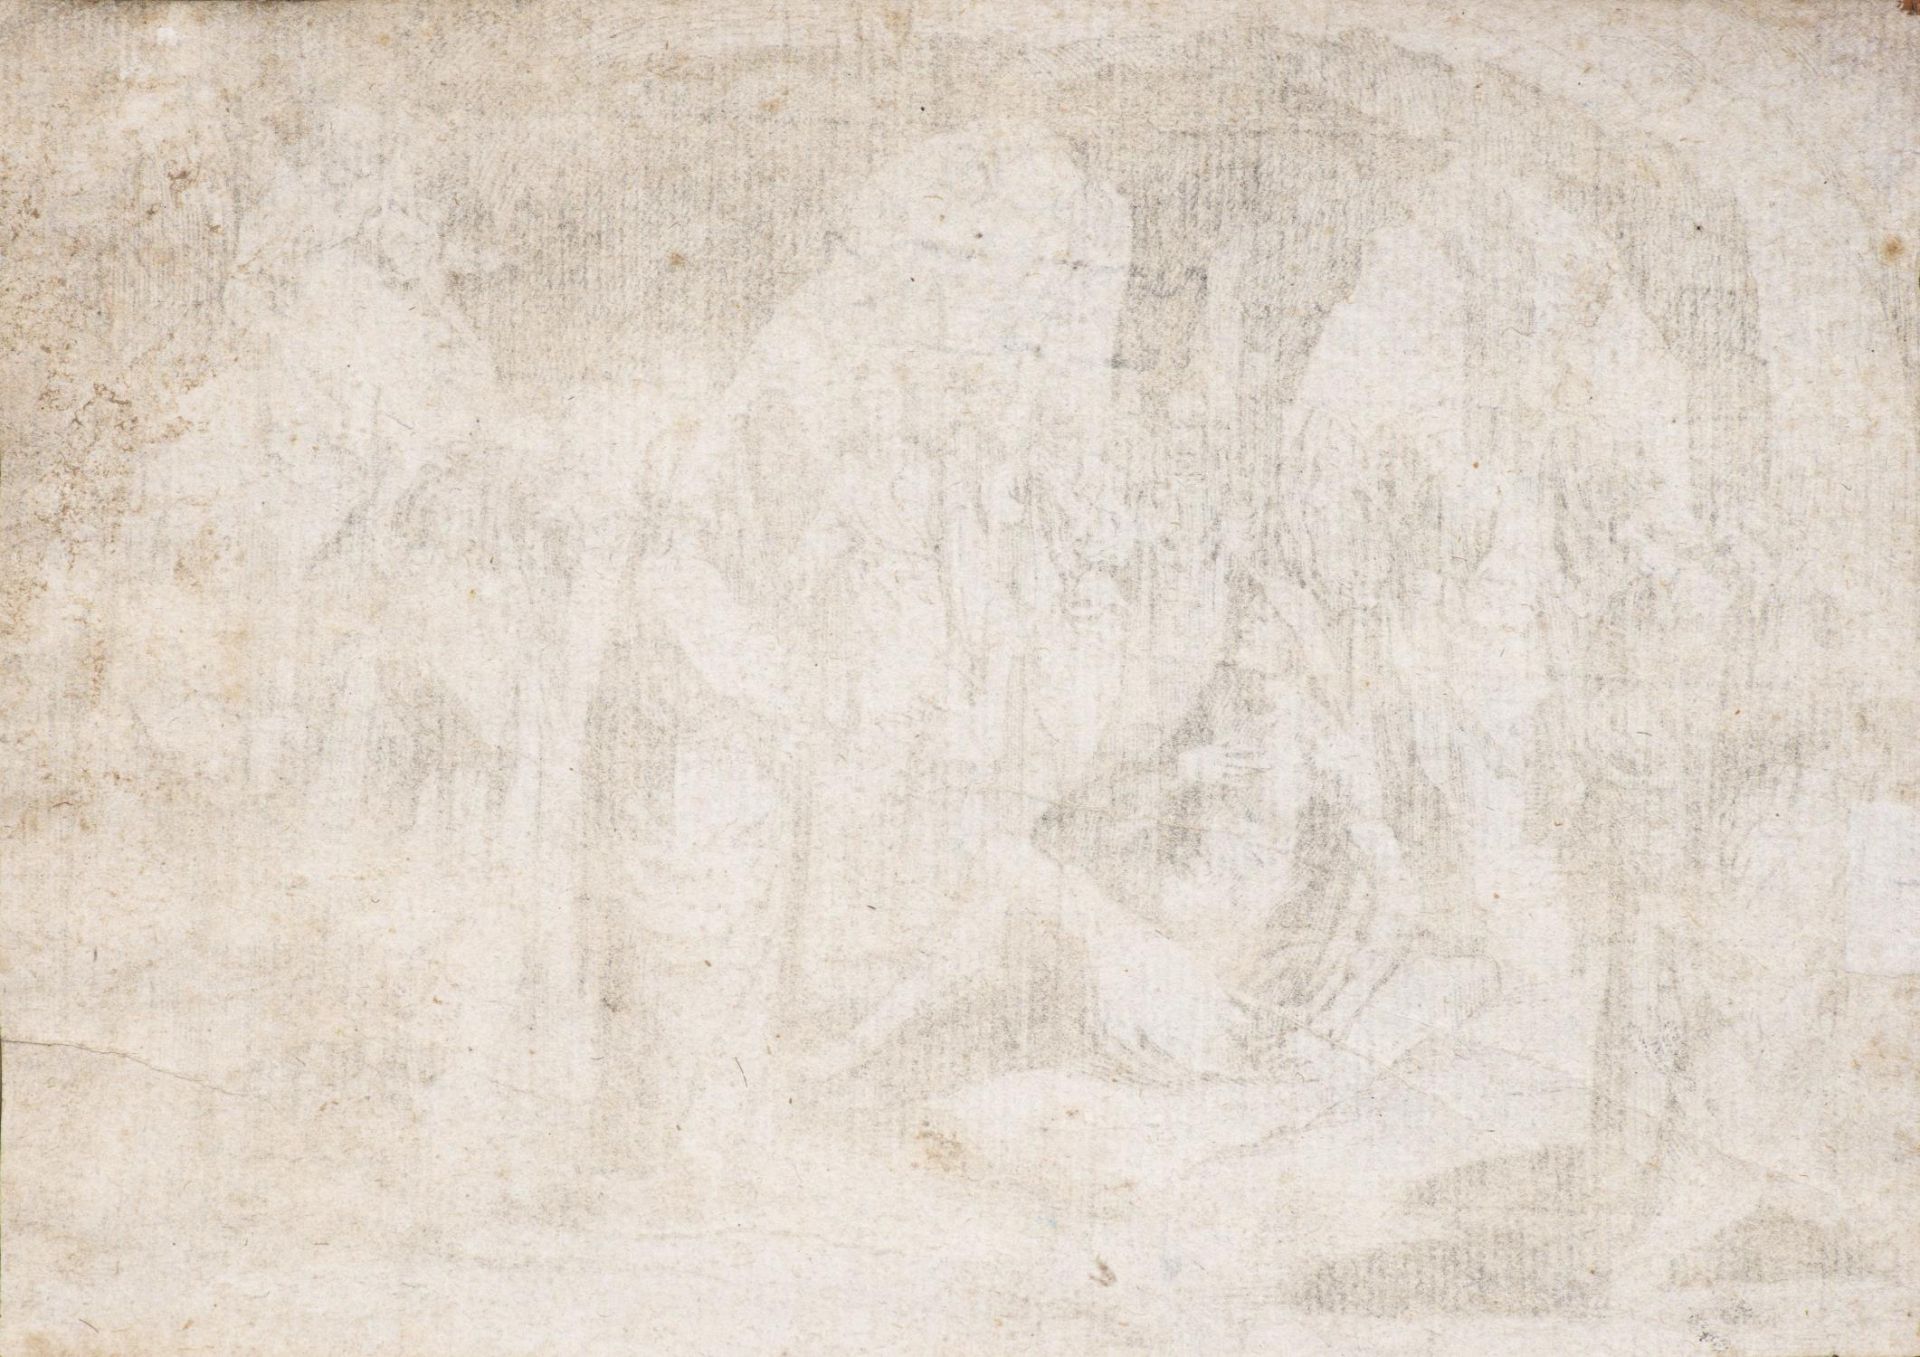 Jacques Callot (1592-1635) d'après, "Les Bohémiens" & "La résurrection de Lazare" - Bild 4 aus 7